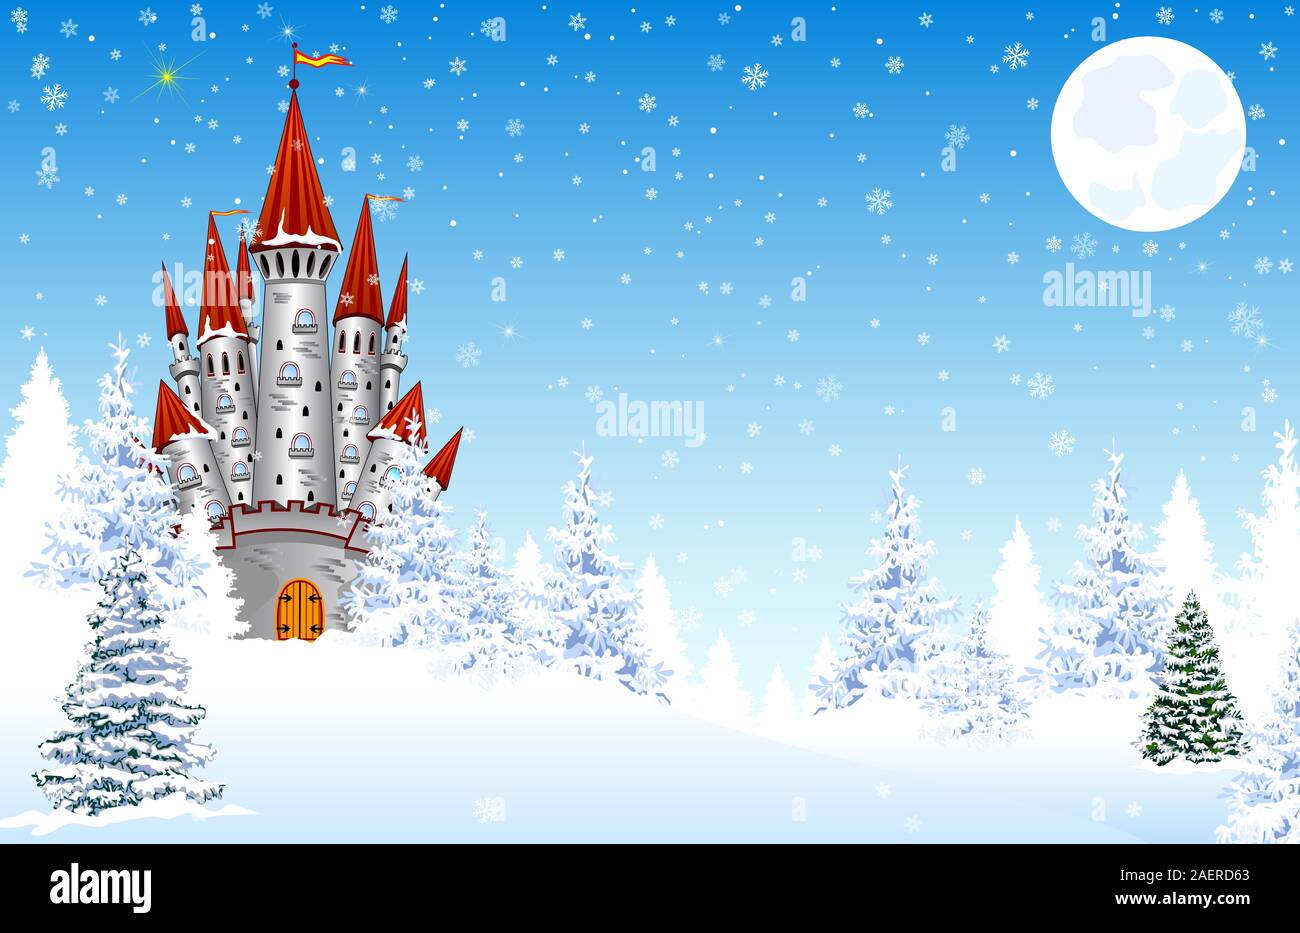 Château sur fond d'une forêt enneigée en hiver. La neige, des flocons de neige. La nuit, la lune. Paysage d'hiver. Illustration de Vecteur